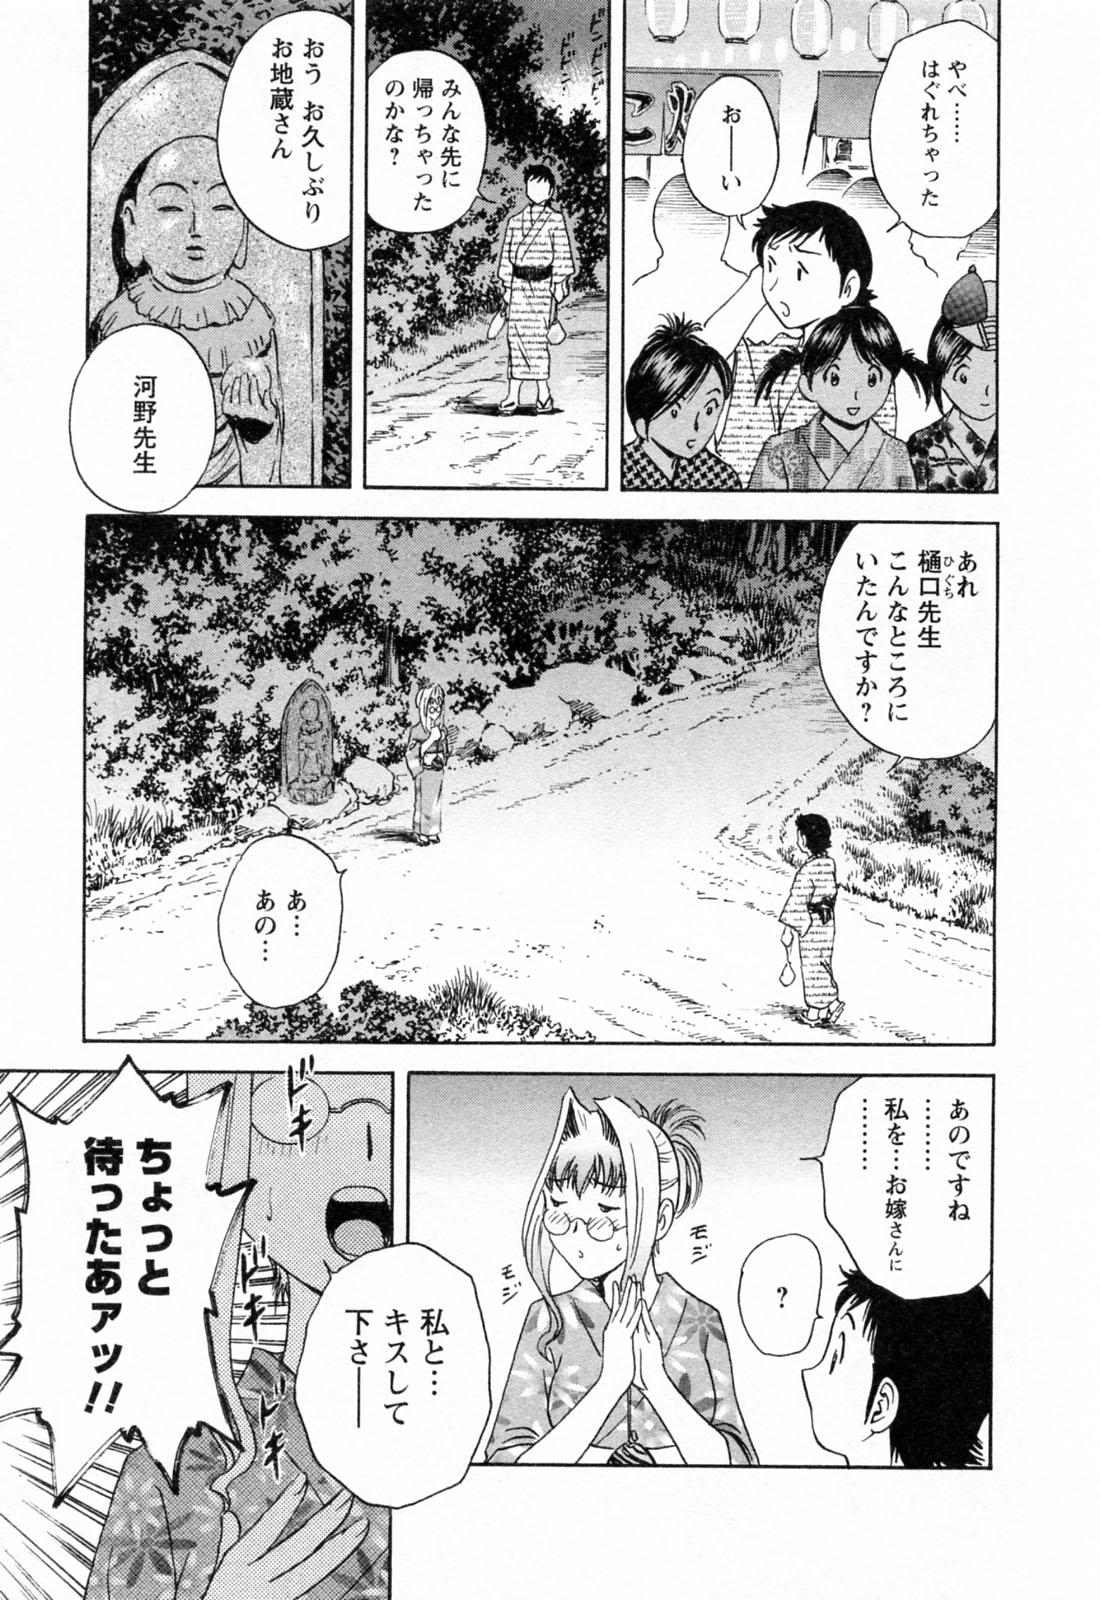 [Hidemaru] Mo-Retsu! Boin Sensei (Boing Boing Teacher) Vol.4 122